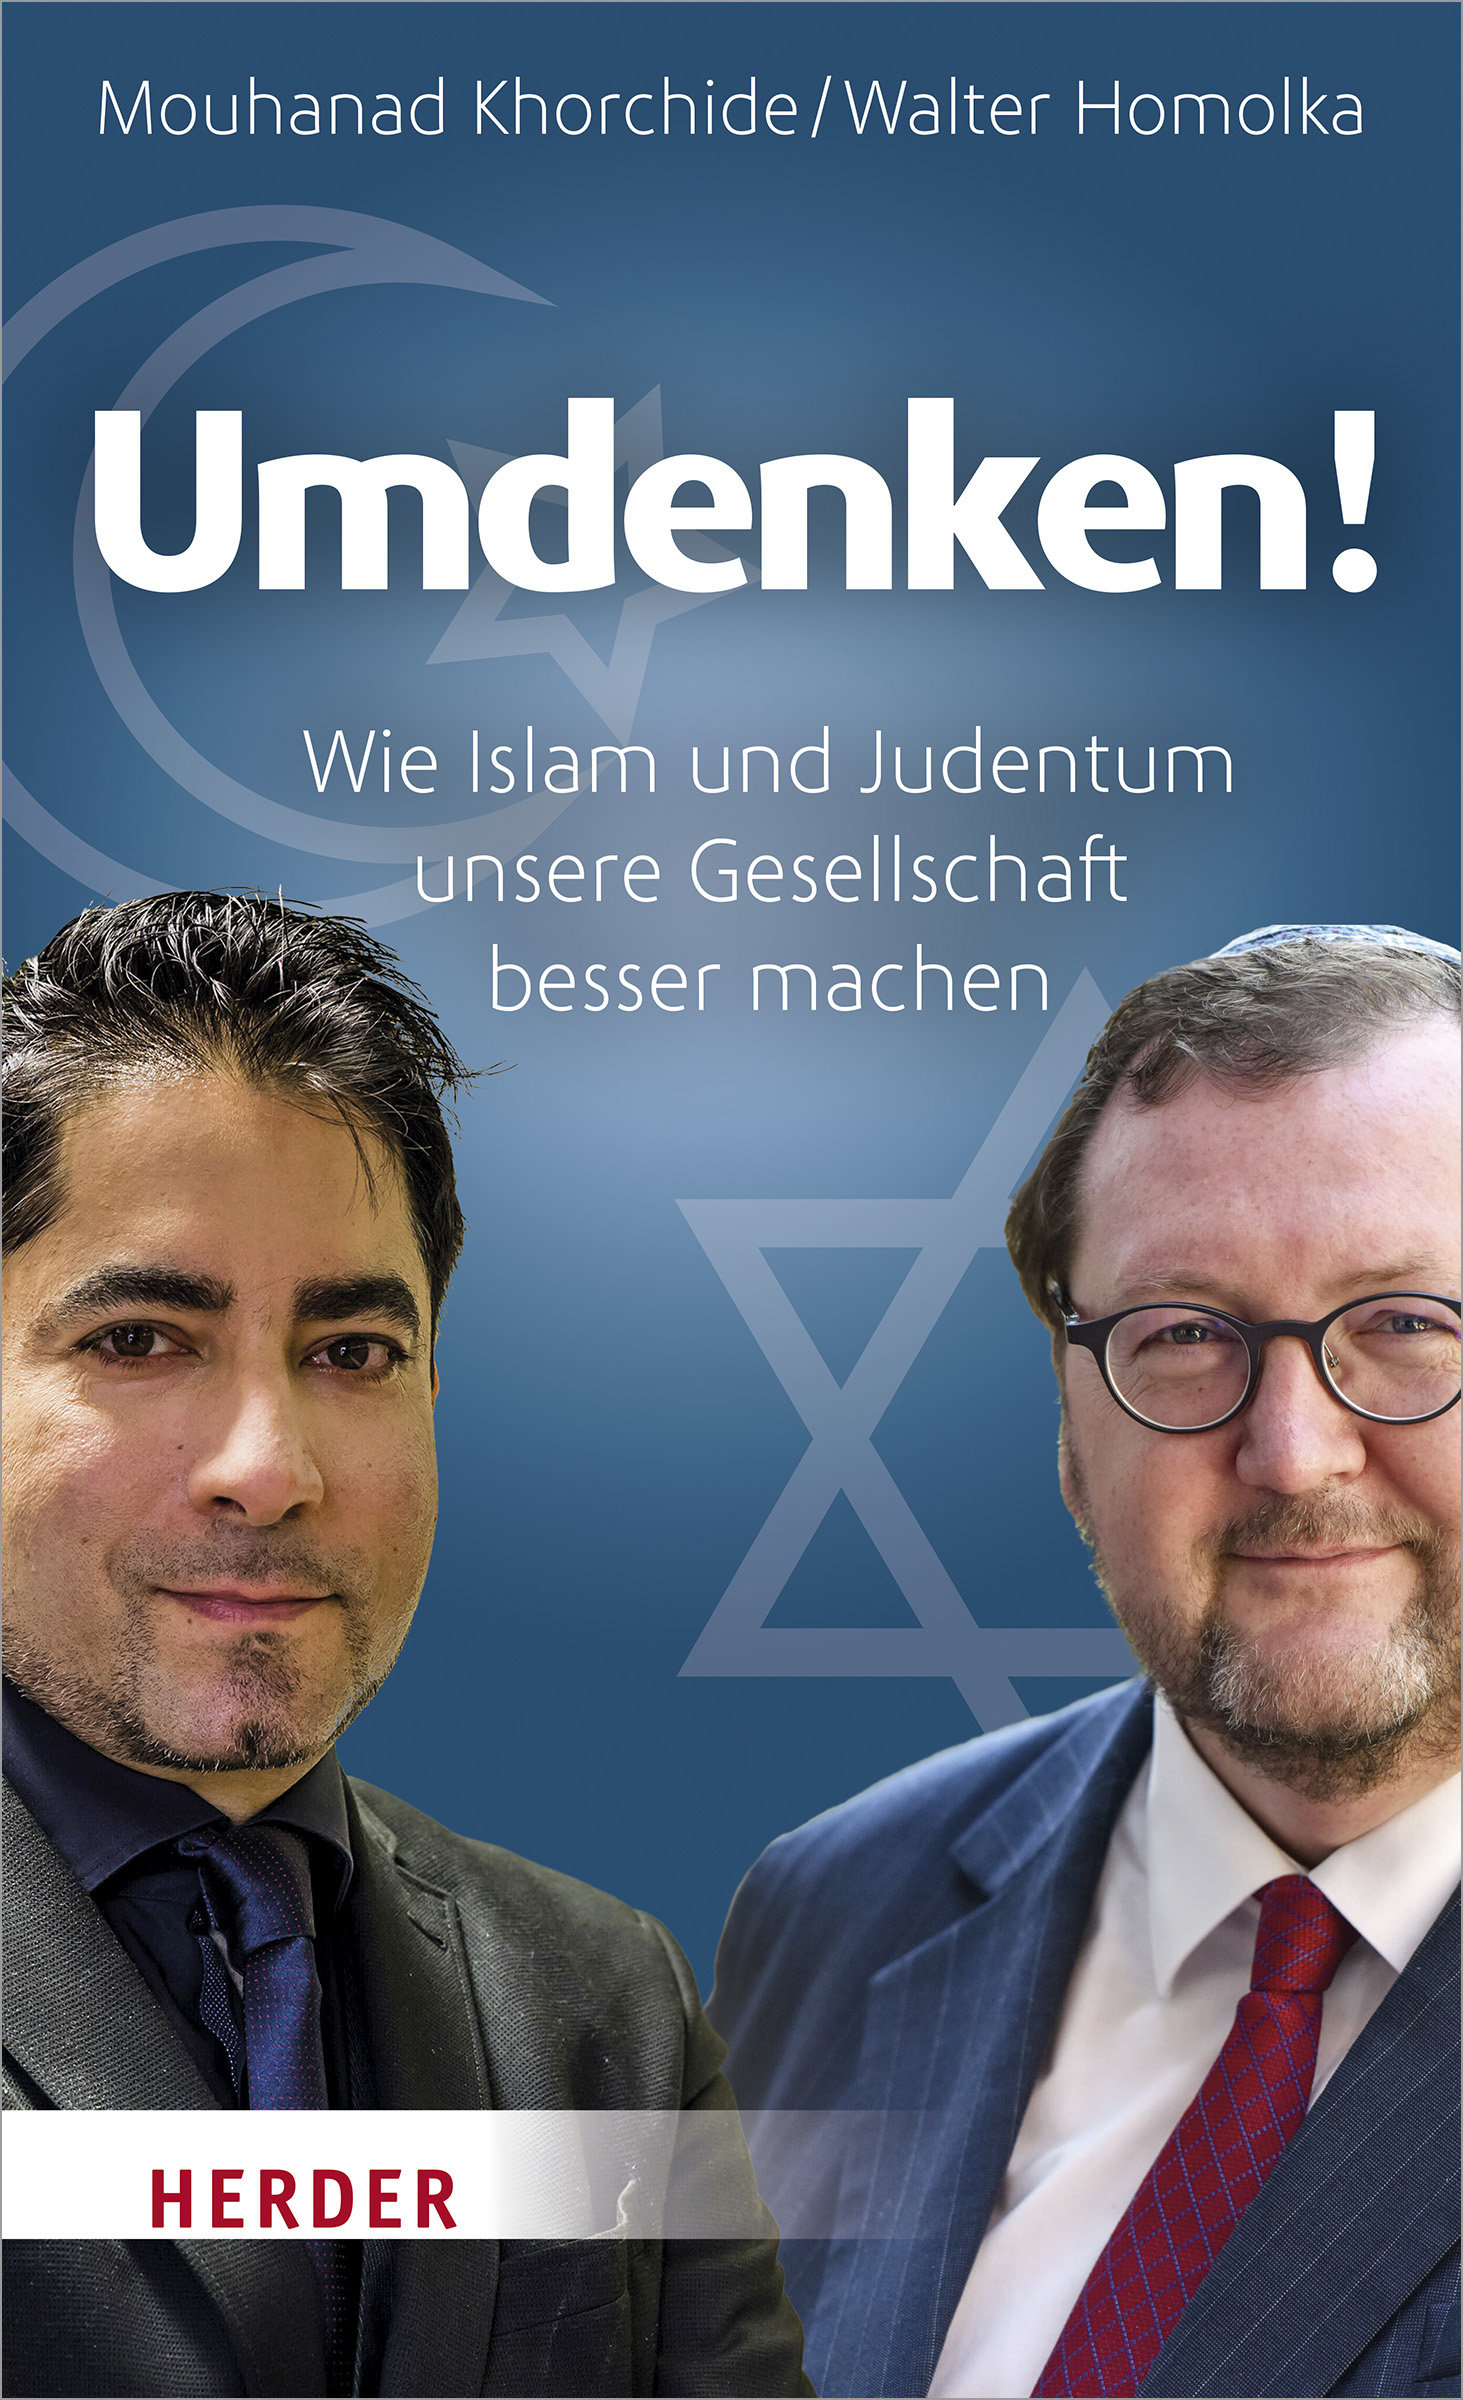 Cover des Buches "Umdenken!"